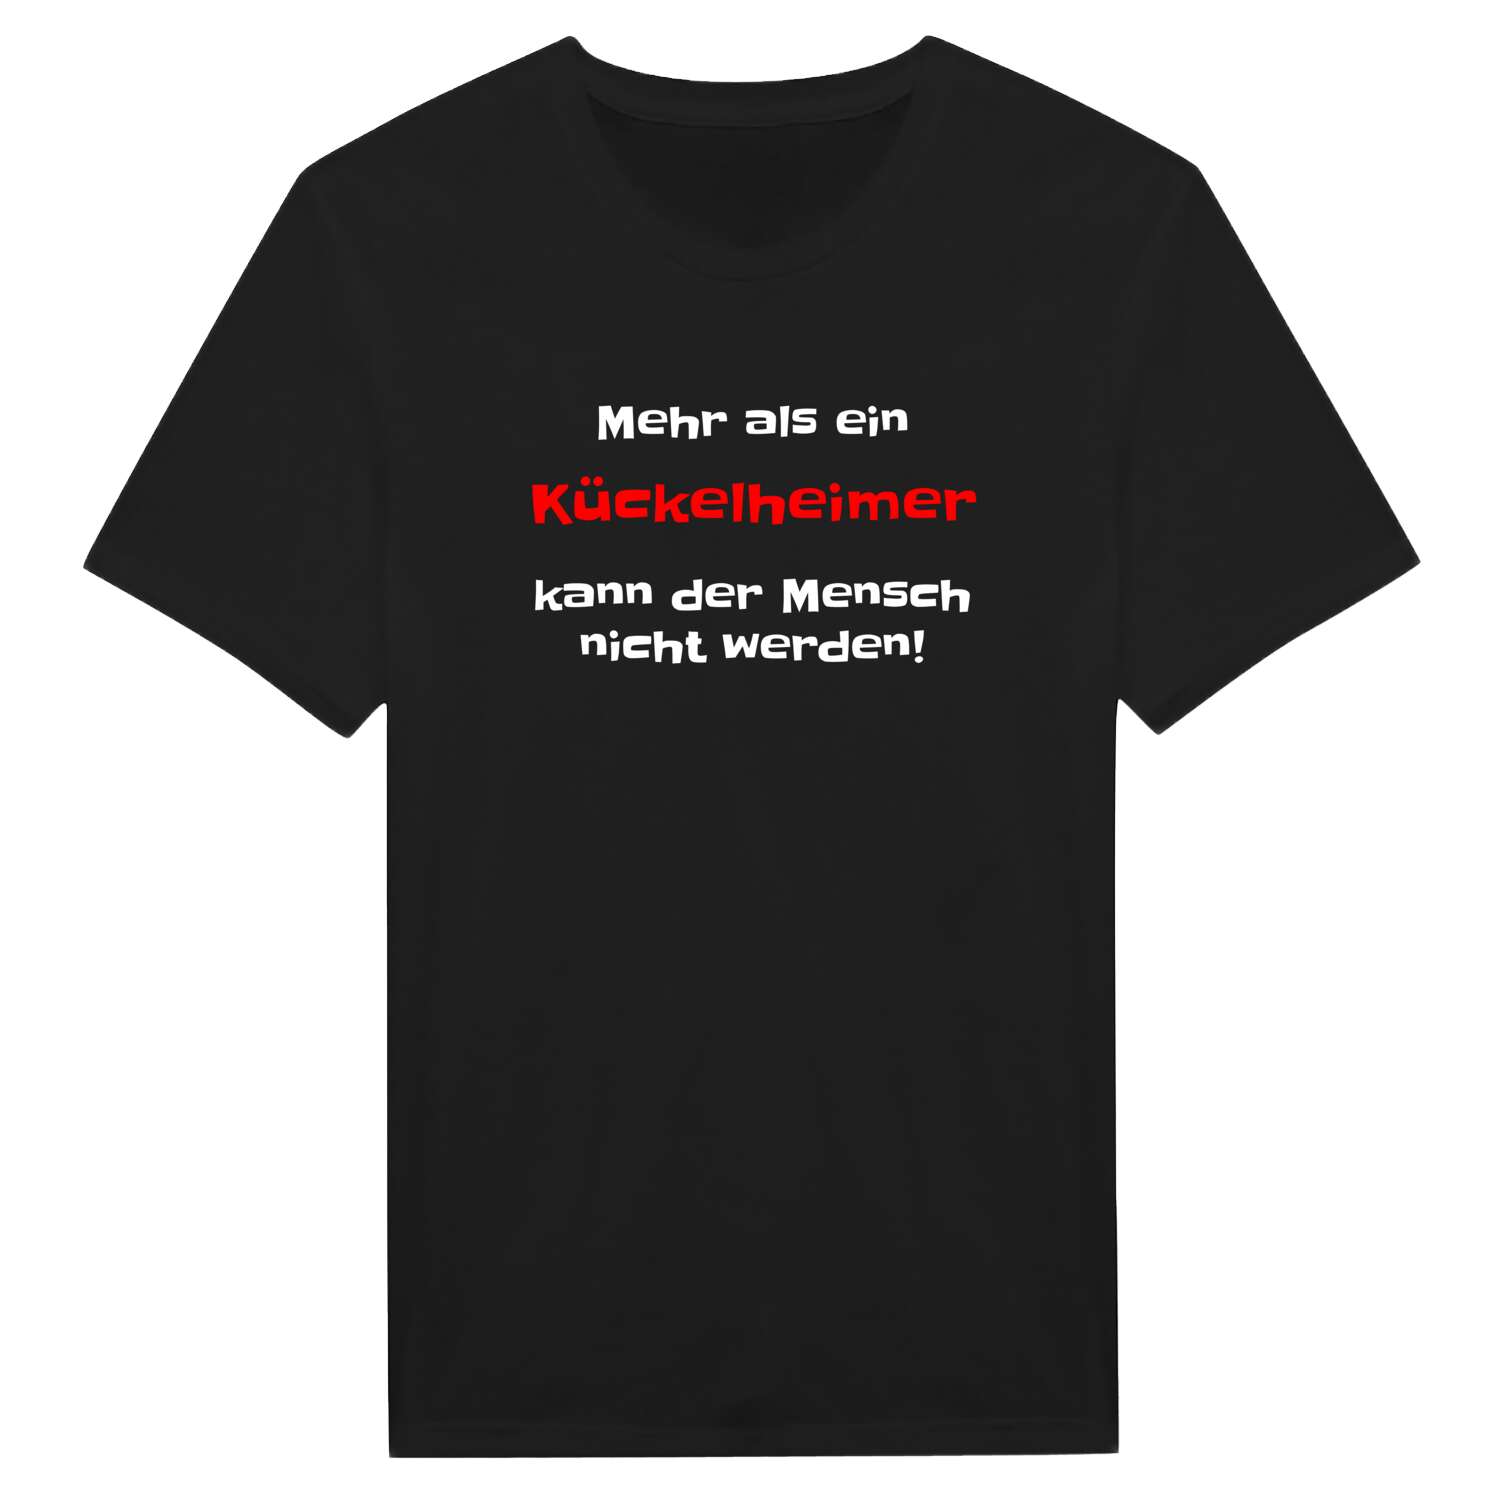 Kückelheim T-Shirt »Mehr als ein«